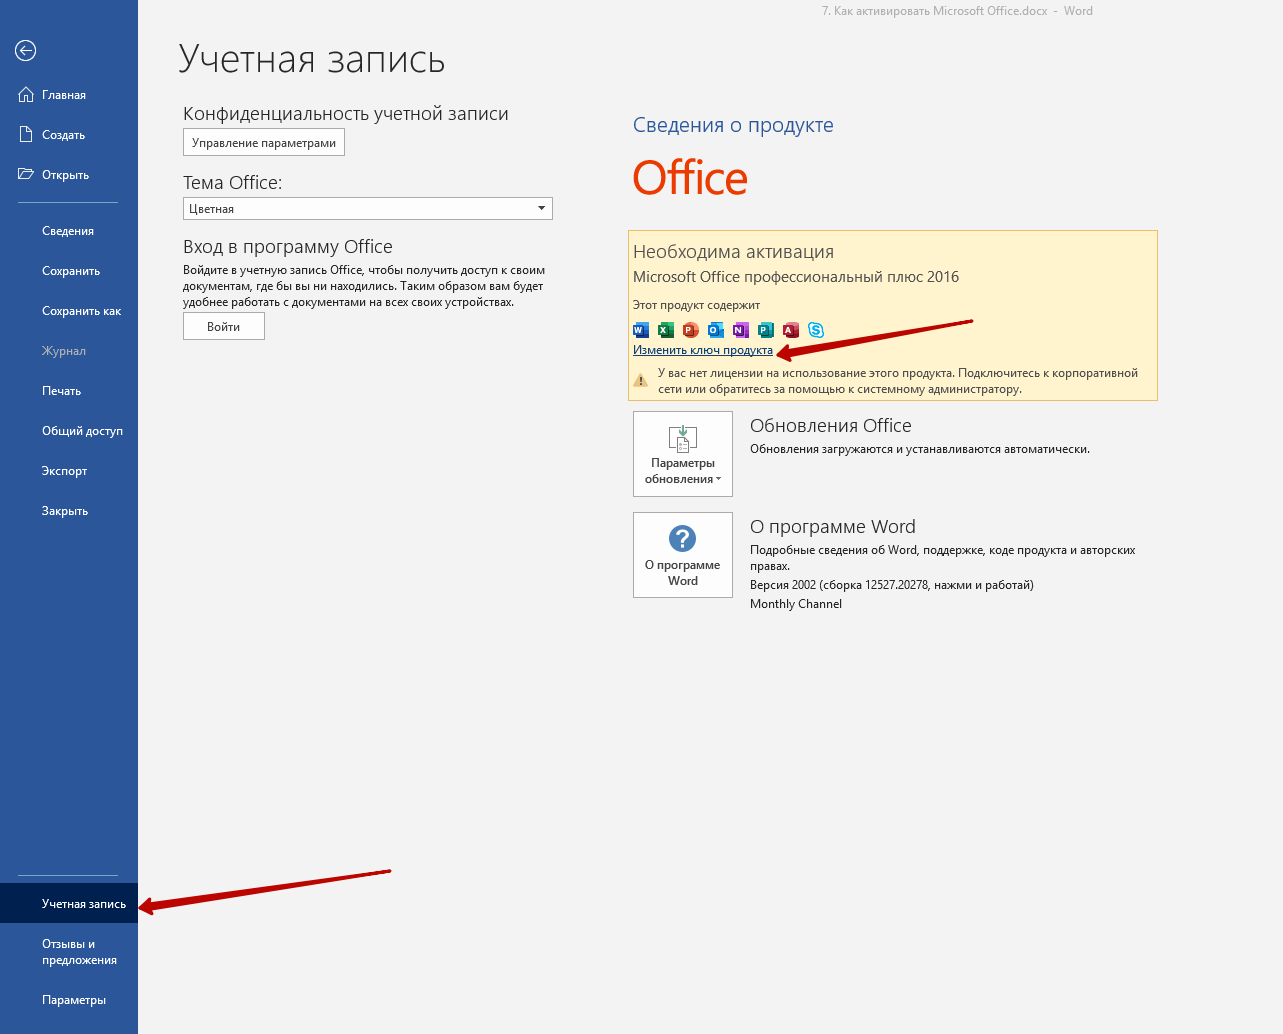 Многих пользователей беспокоит вопрос, как активировать Microsoft Office Первый из возможных способов, как активировать Microsoft Office – это использовать интернет соединение